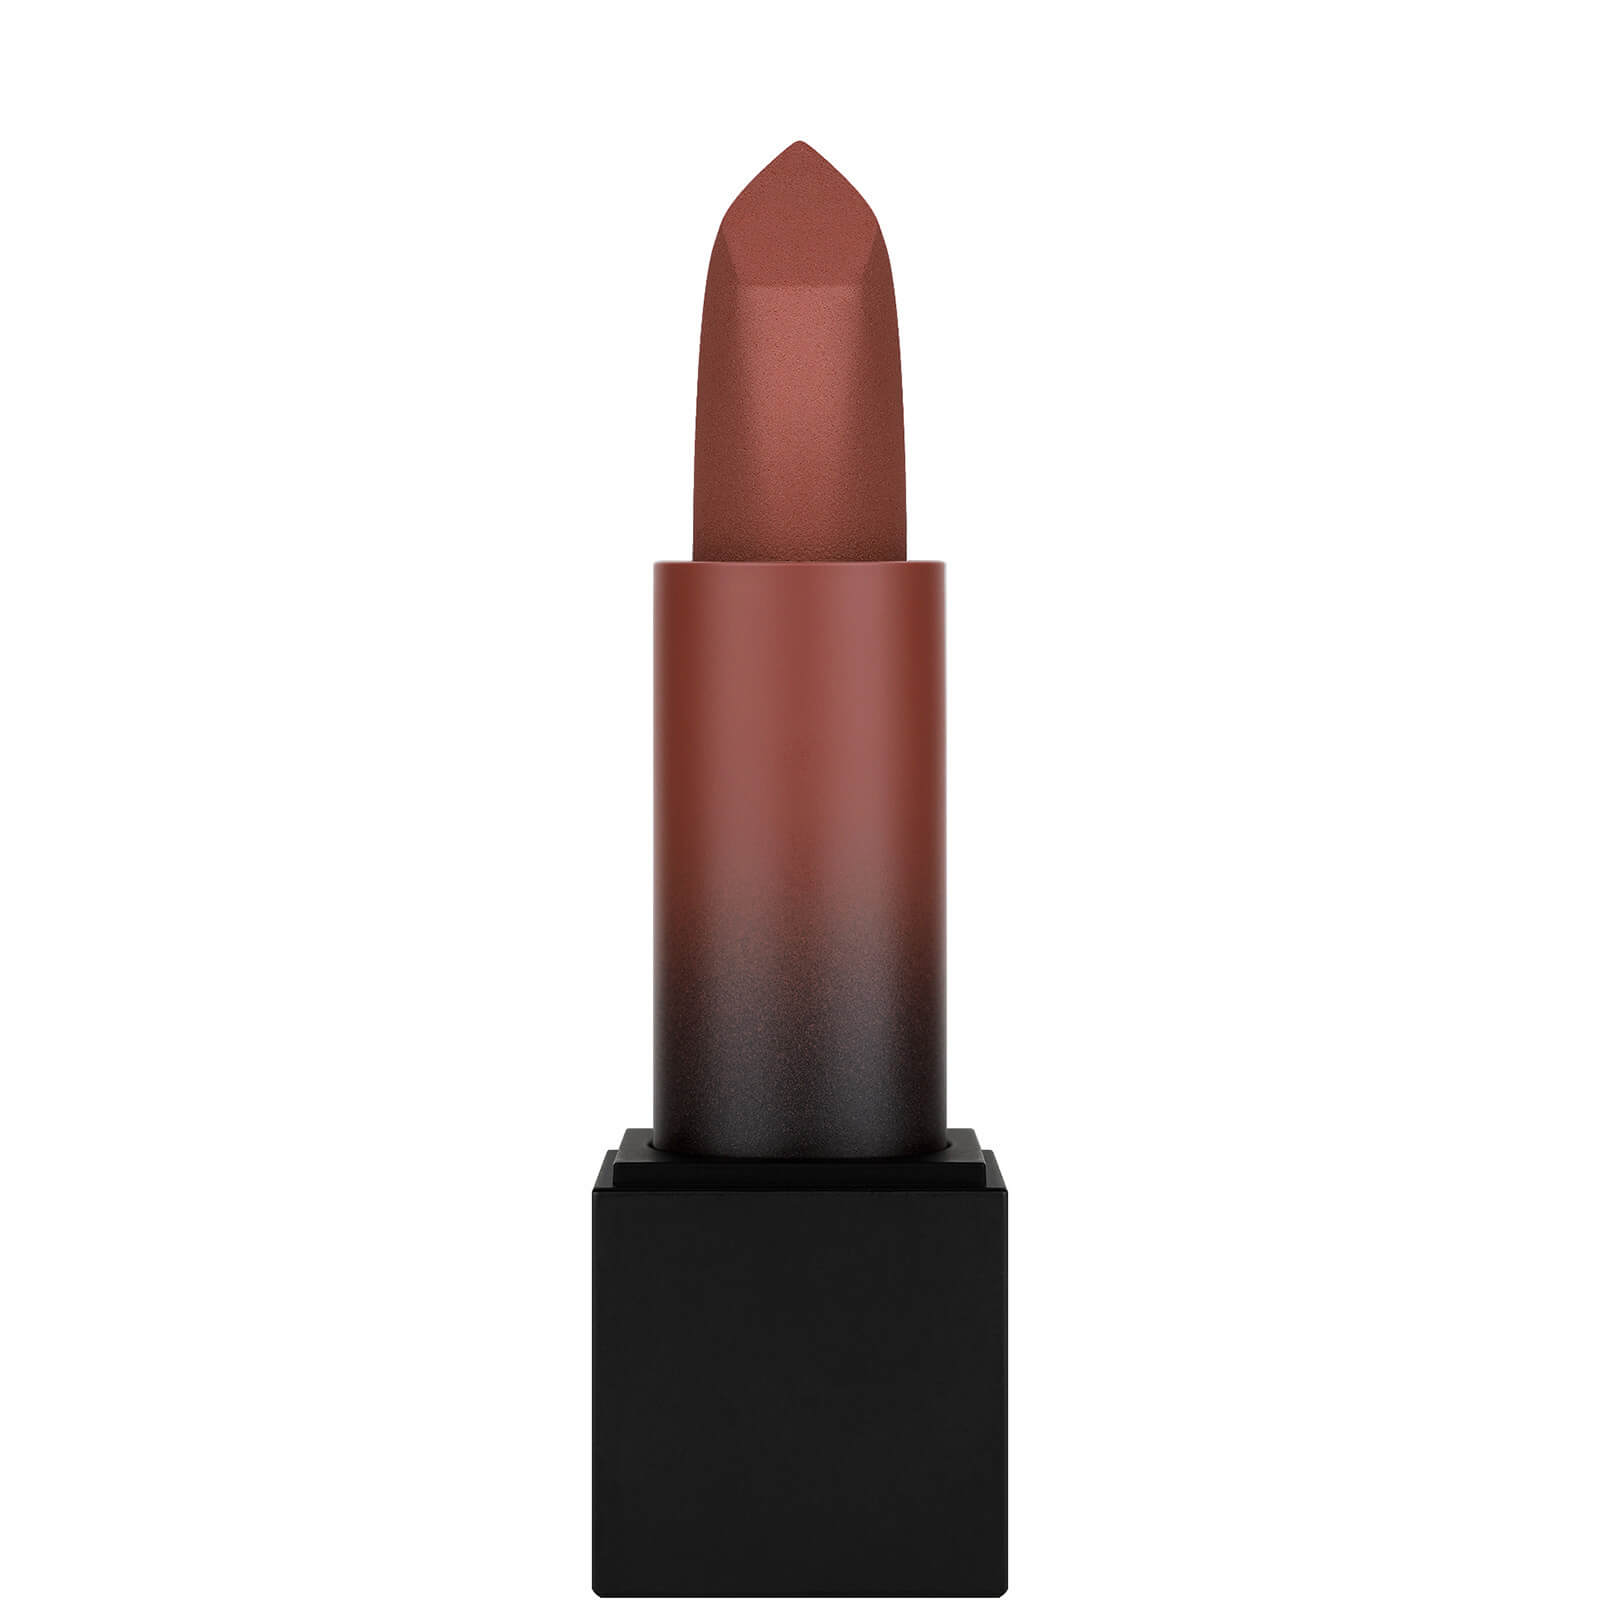 Photos - Lipstick & Lip Gloss Huda Beauty Power Bullet Matte Lipstick - Graduation Day 